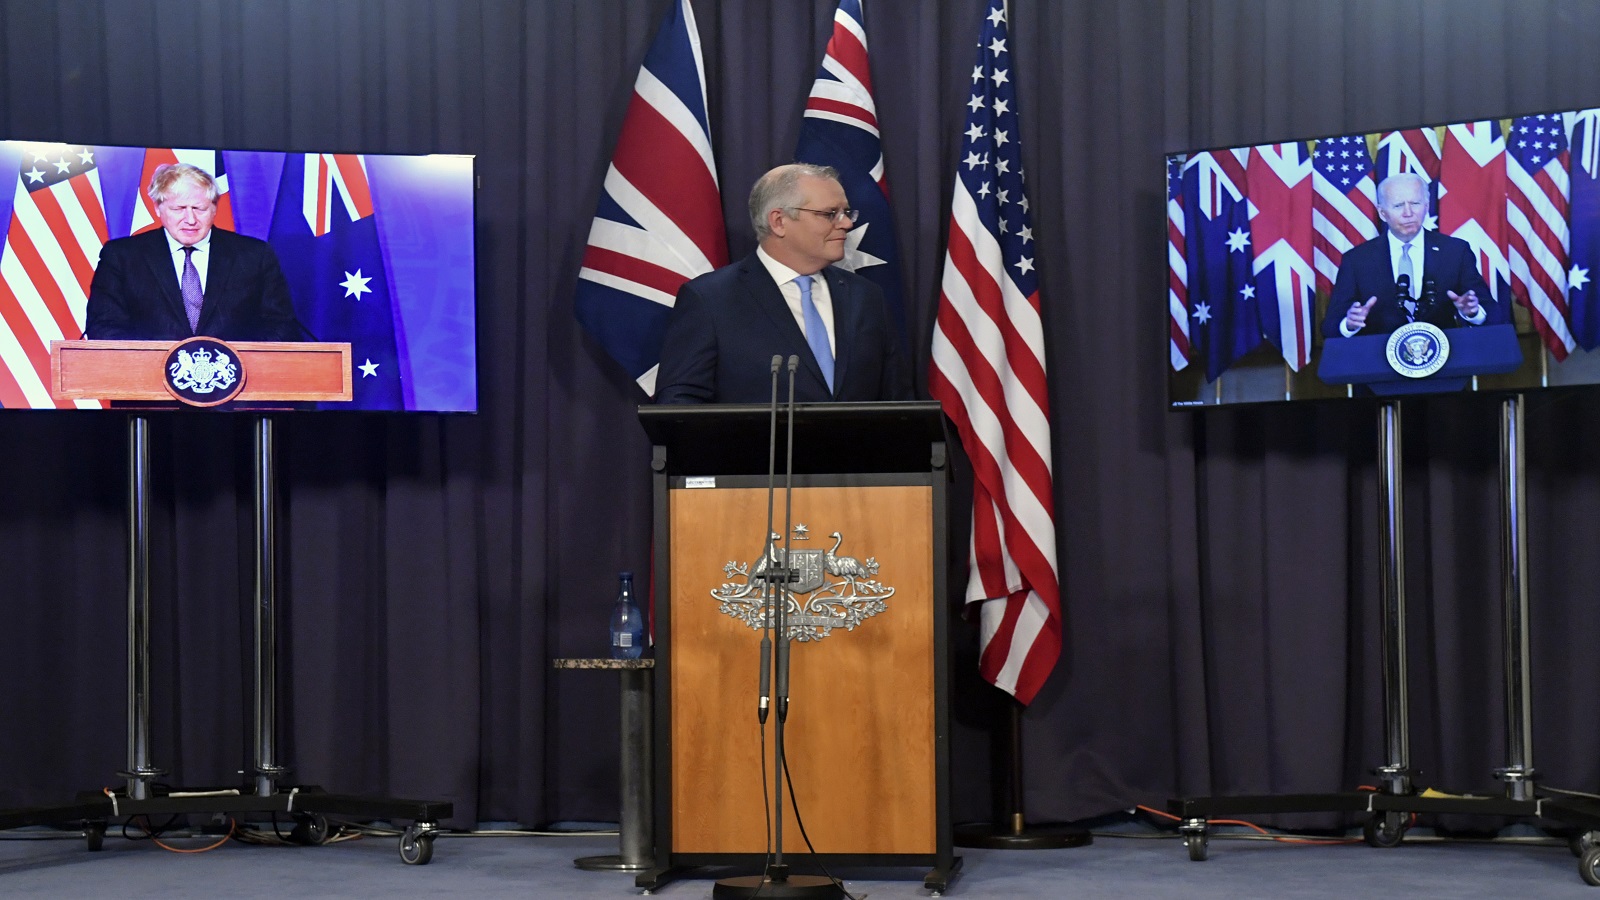 واشنطن ولندن تزودان أستراليا بغواصات نووية وصواريخ..لتحدي الصين